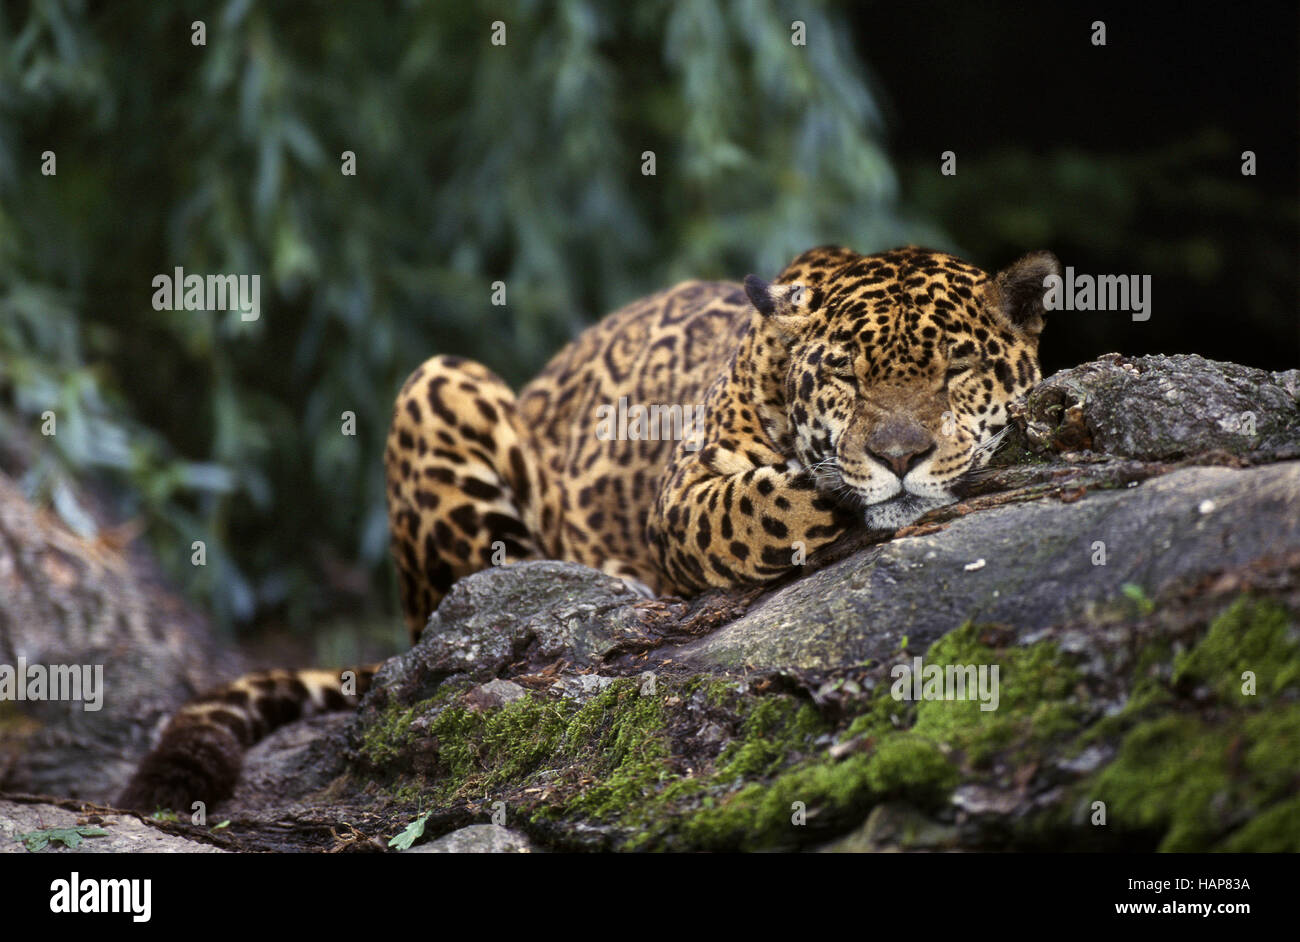 Jaguar, Panthera onca, resting Stock Photo